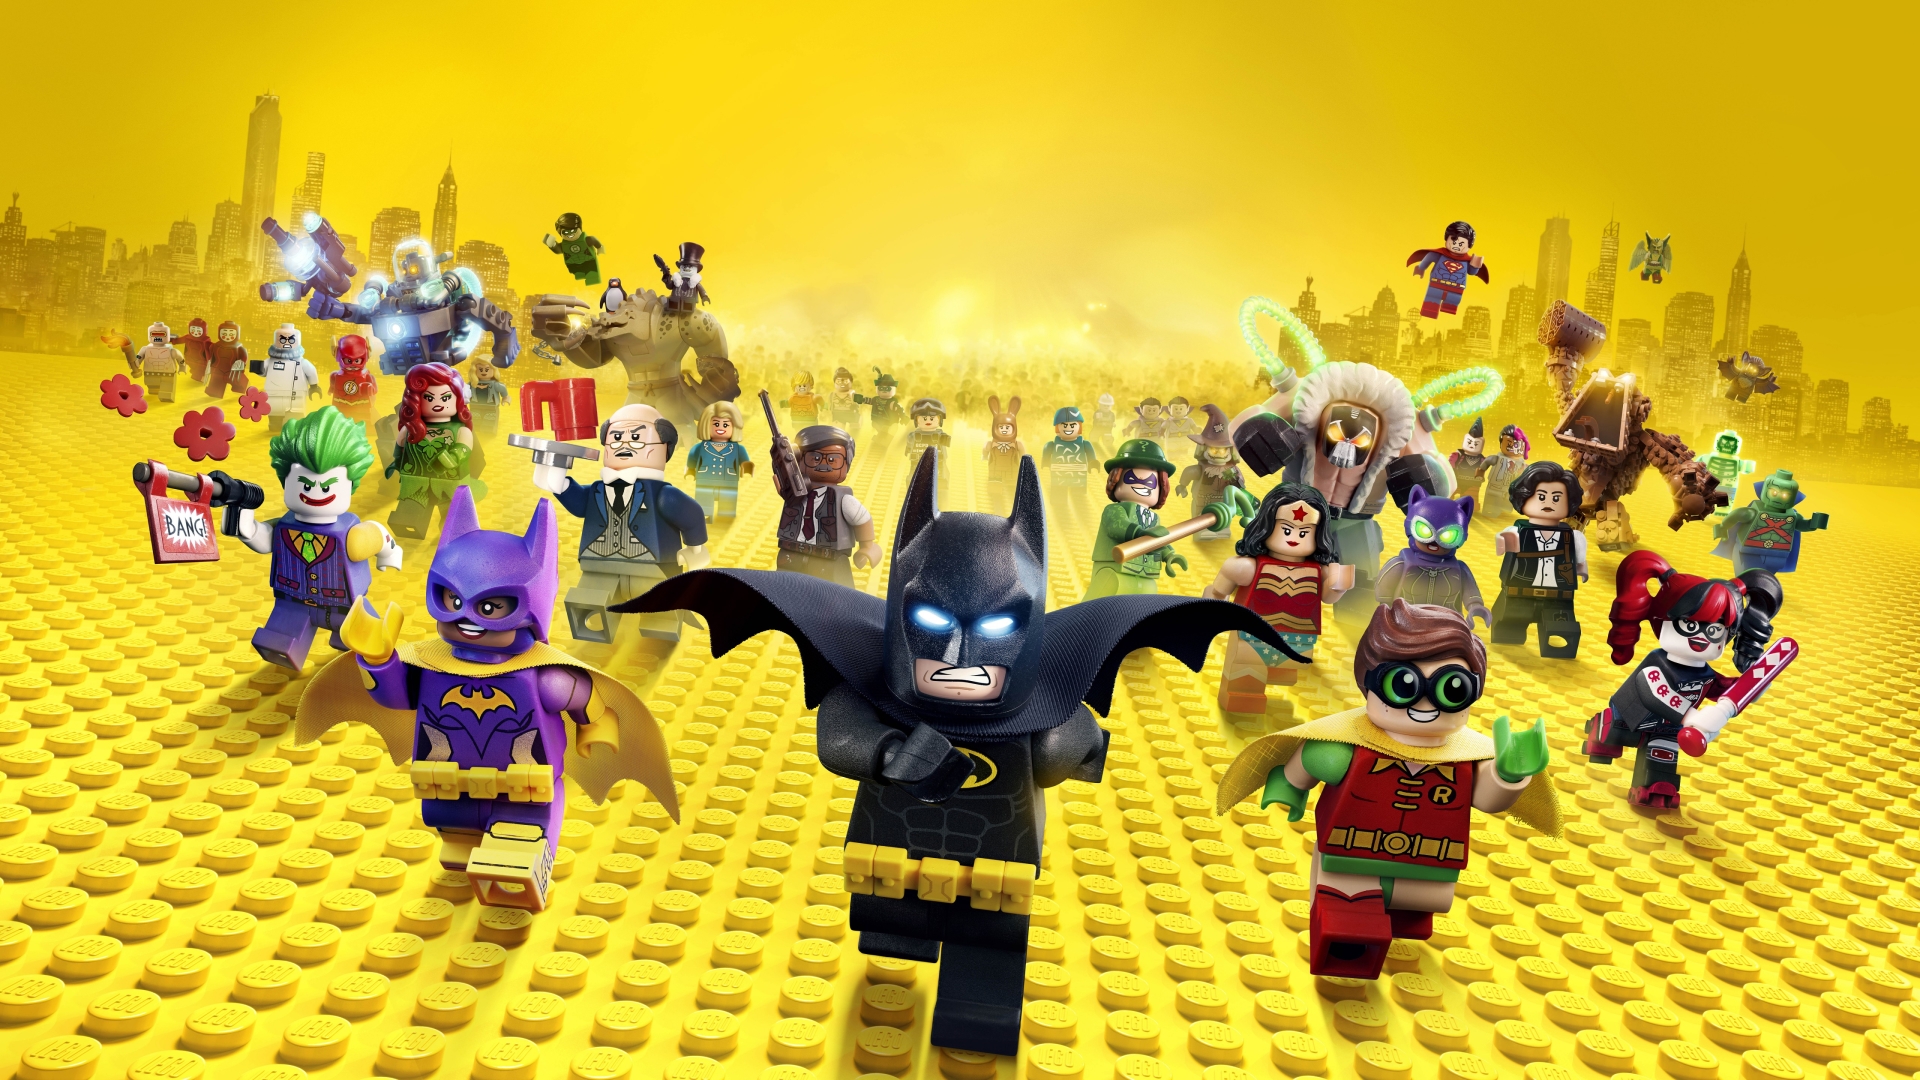 Fondos de pantalla de Batman La Lego Pelicula, Wallpapers Gratis